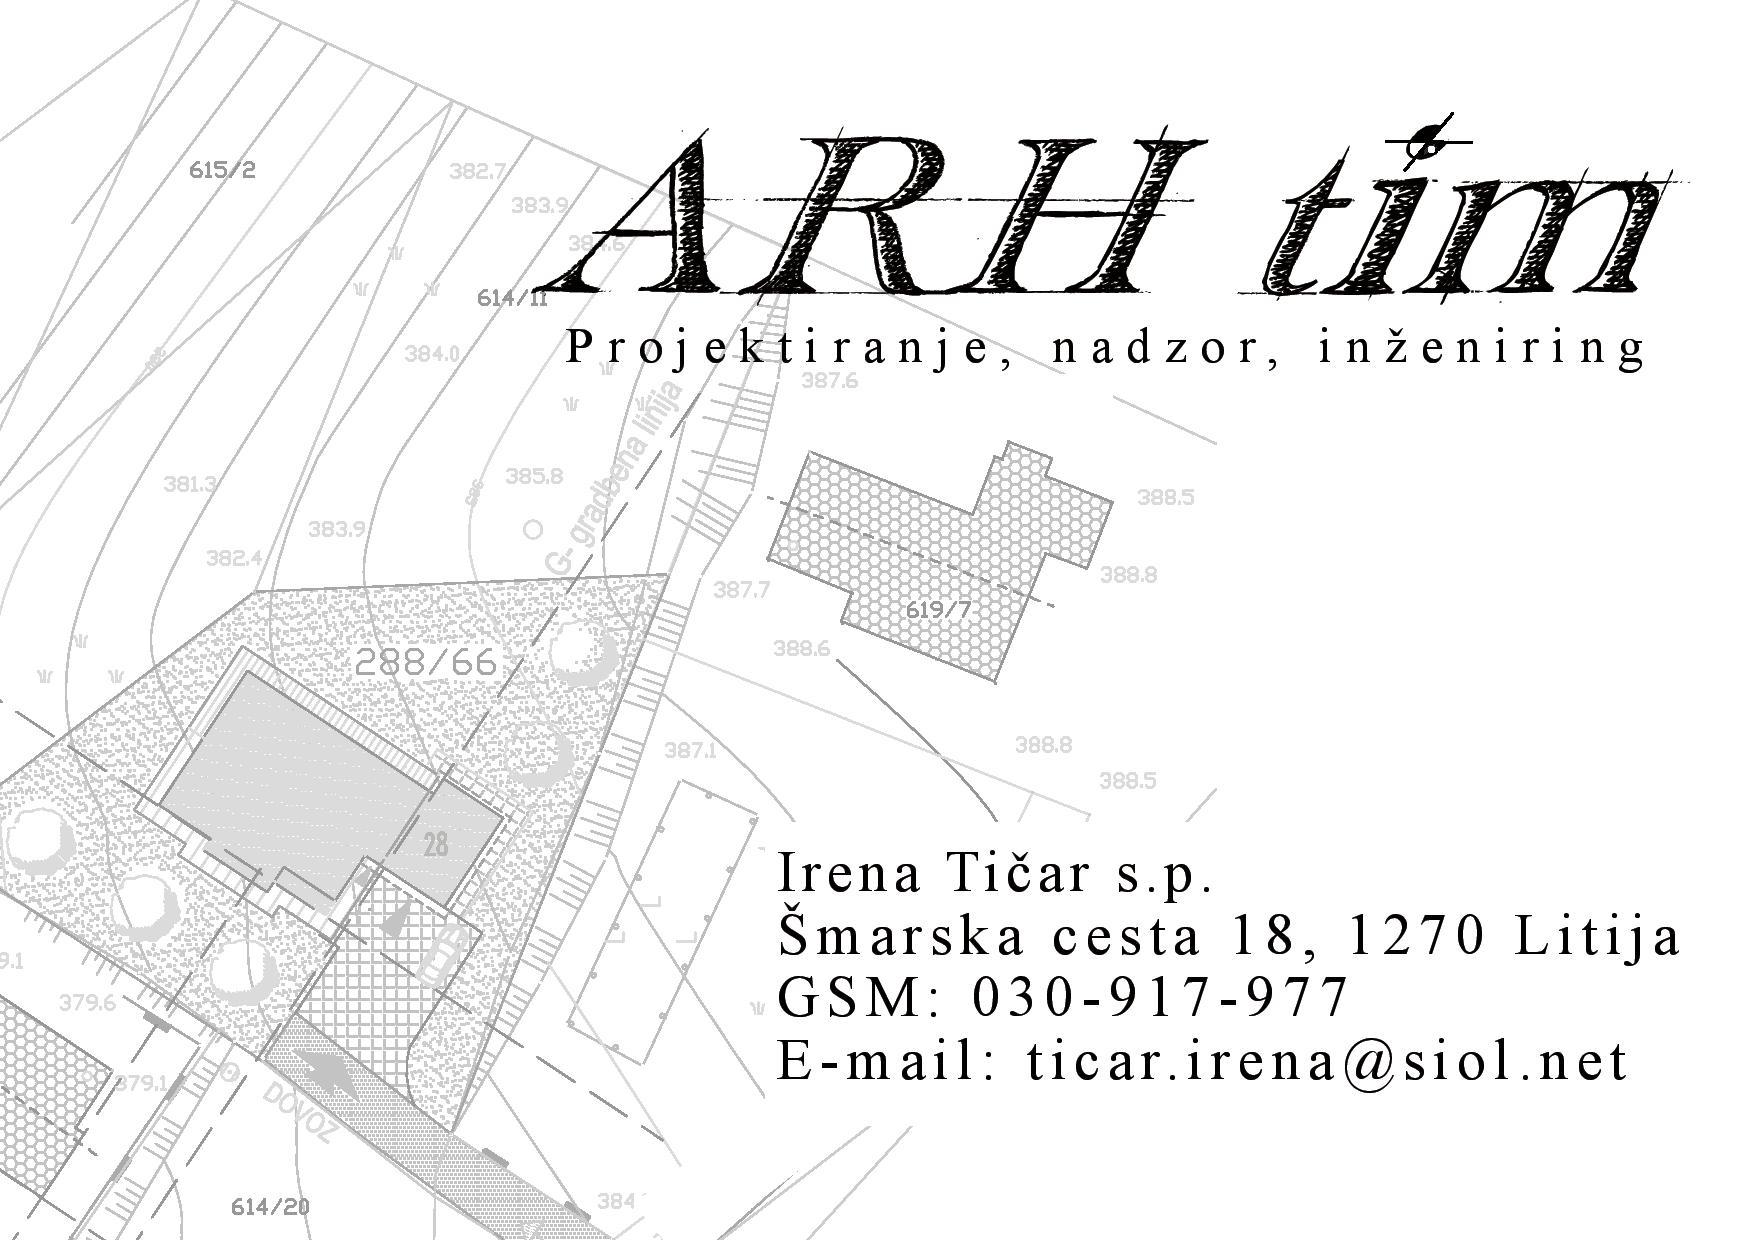 ARH TIM, projektiranje, nadzor, inženiring, Irena Tičar S.P.